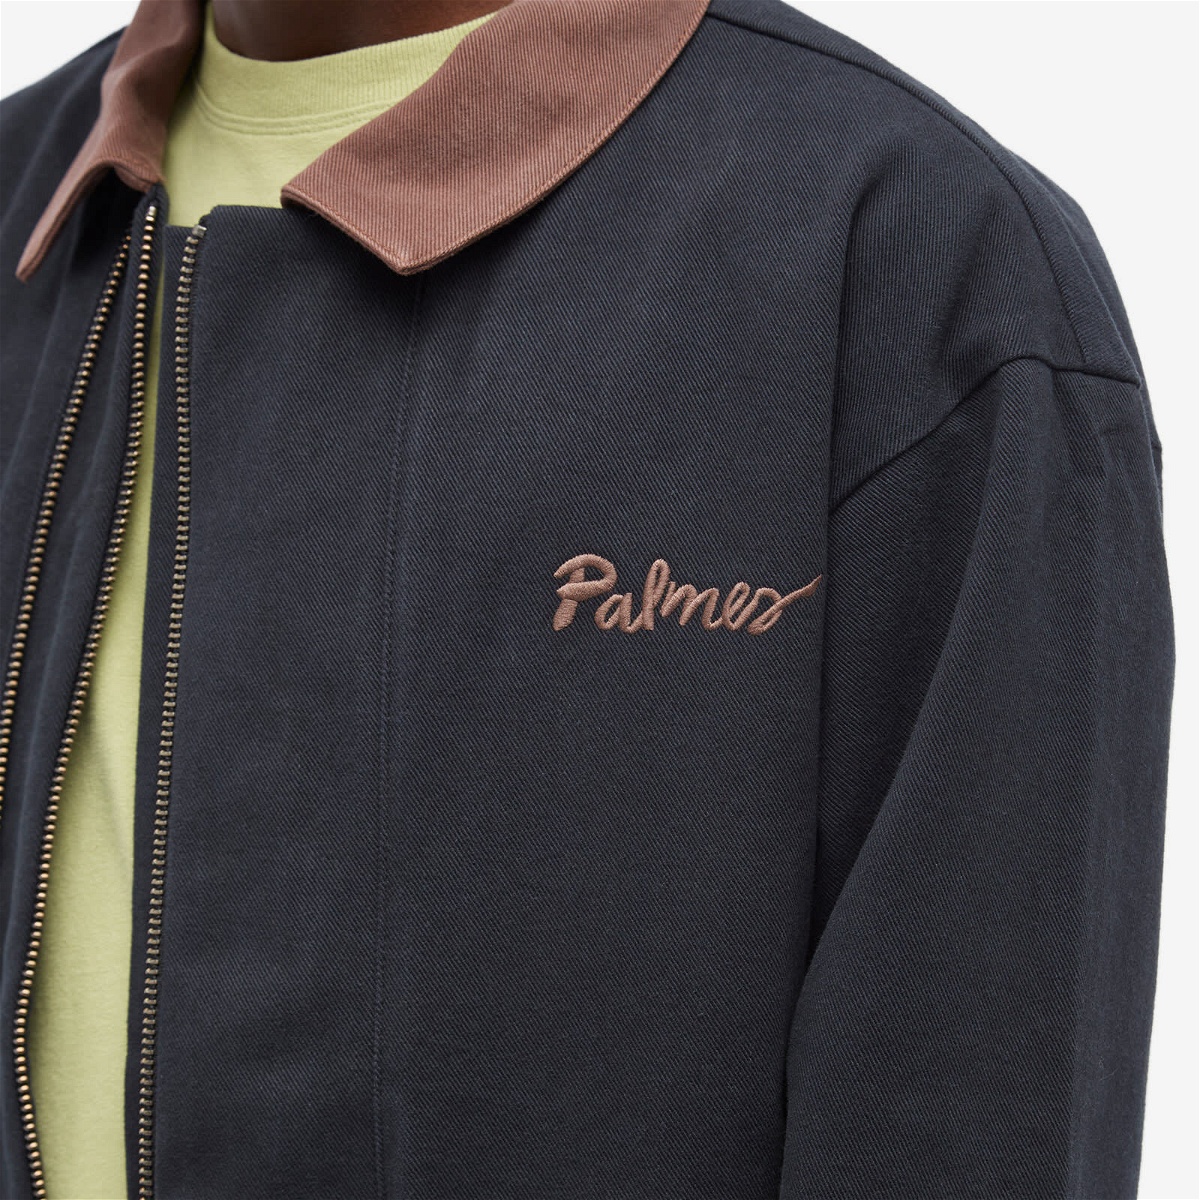 Palmes Men's Double Zip Jacket in Black/Brown